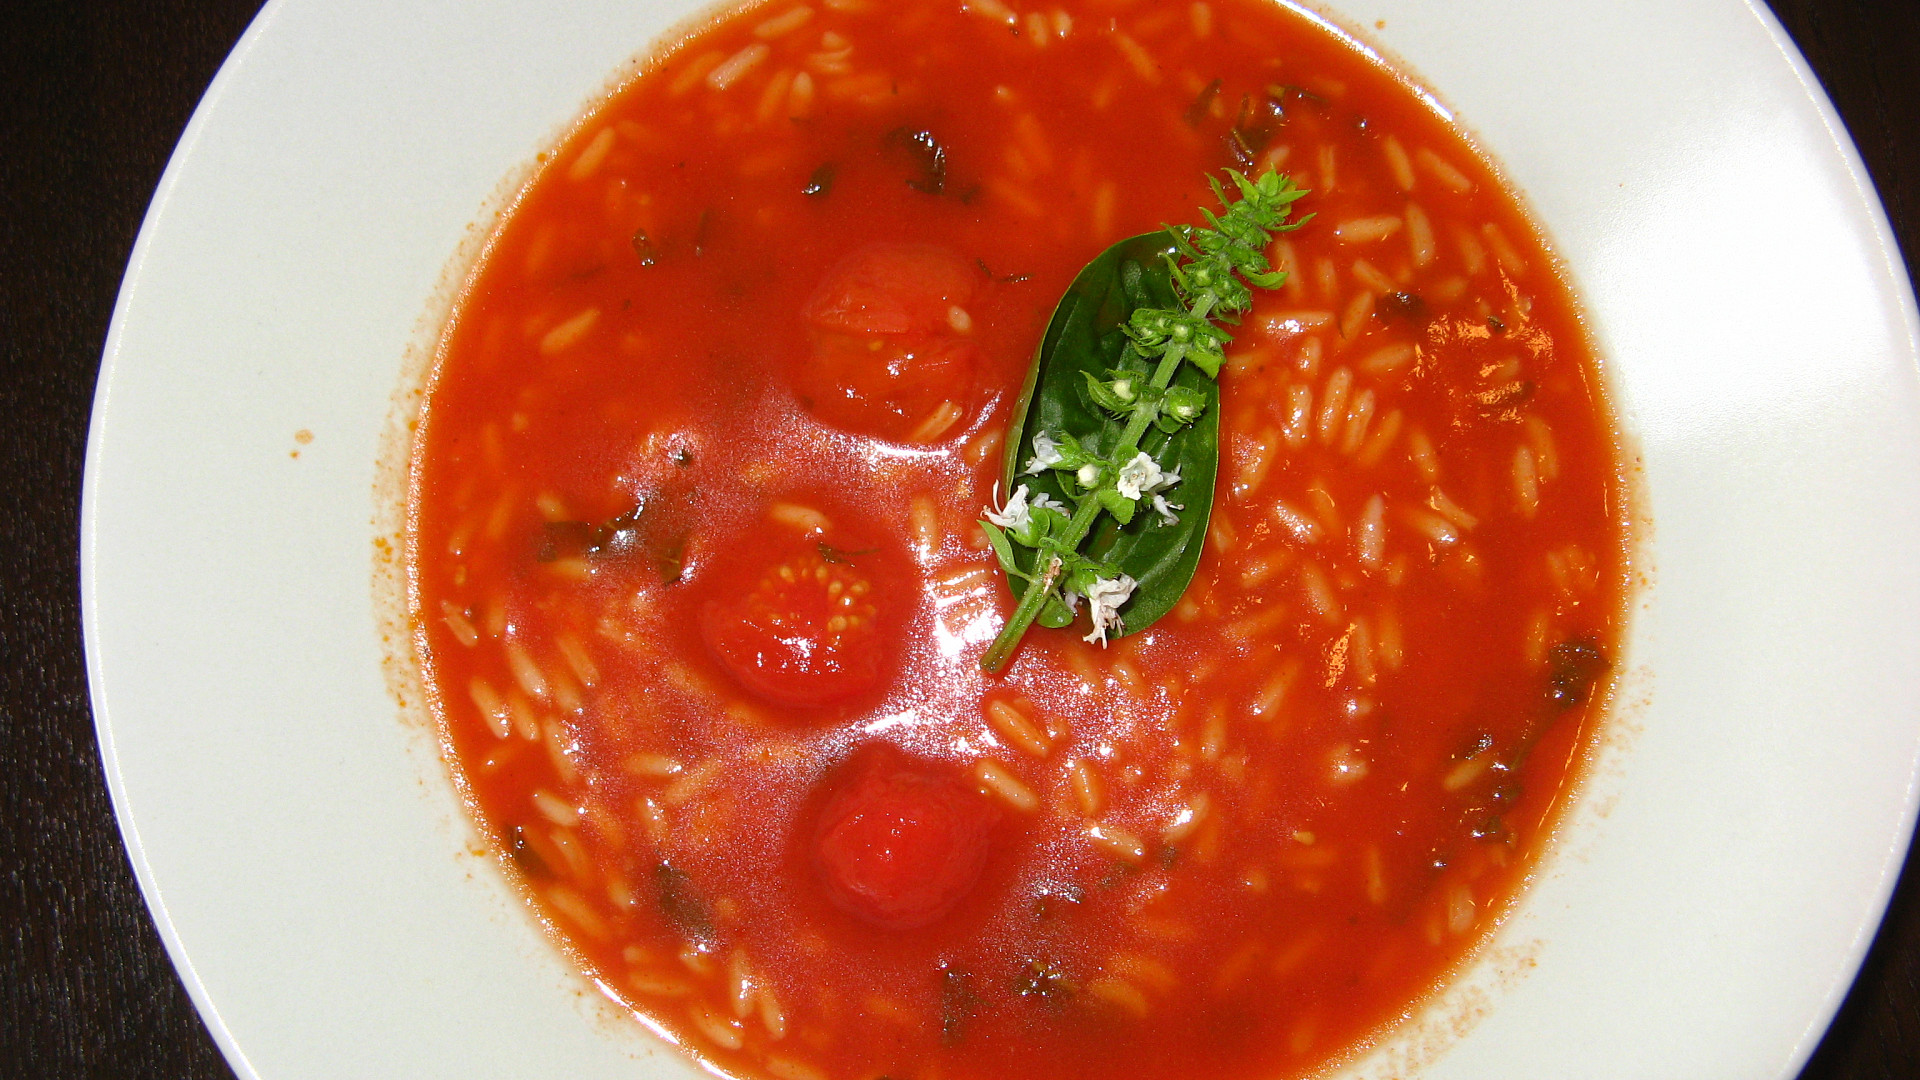 Rajská polévka - bez cukru, přesto šmakózní